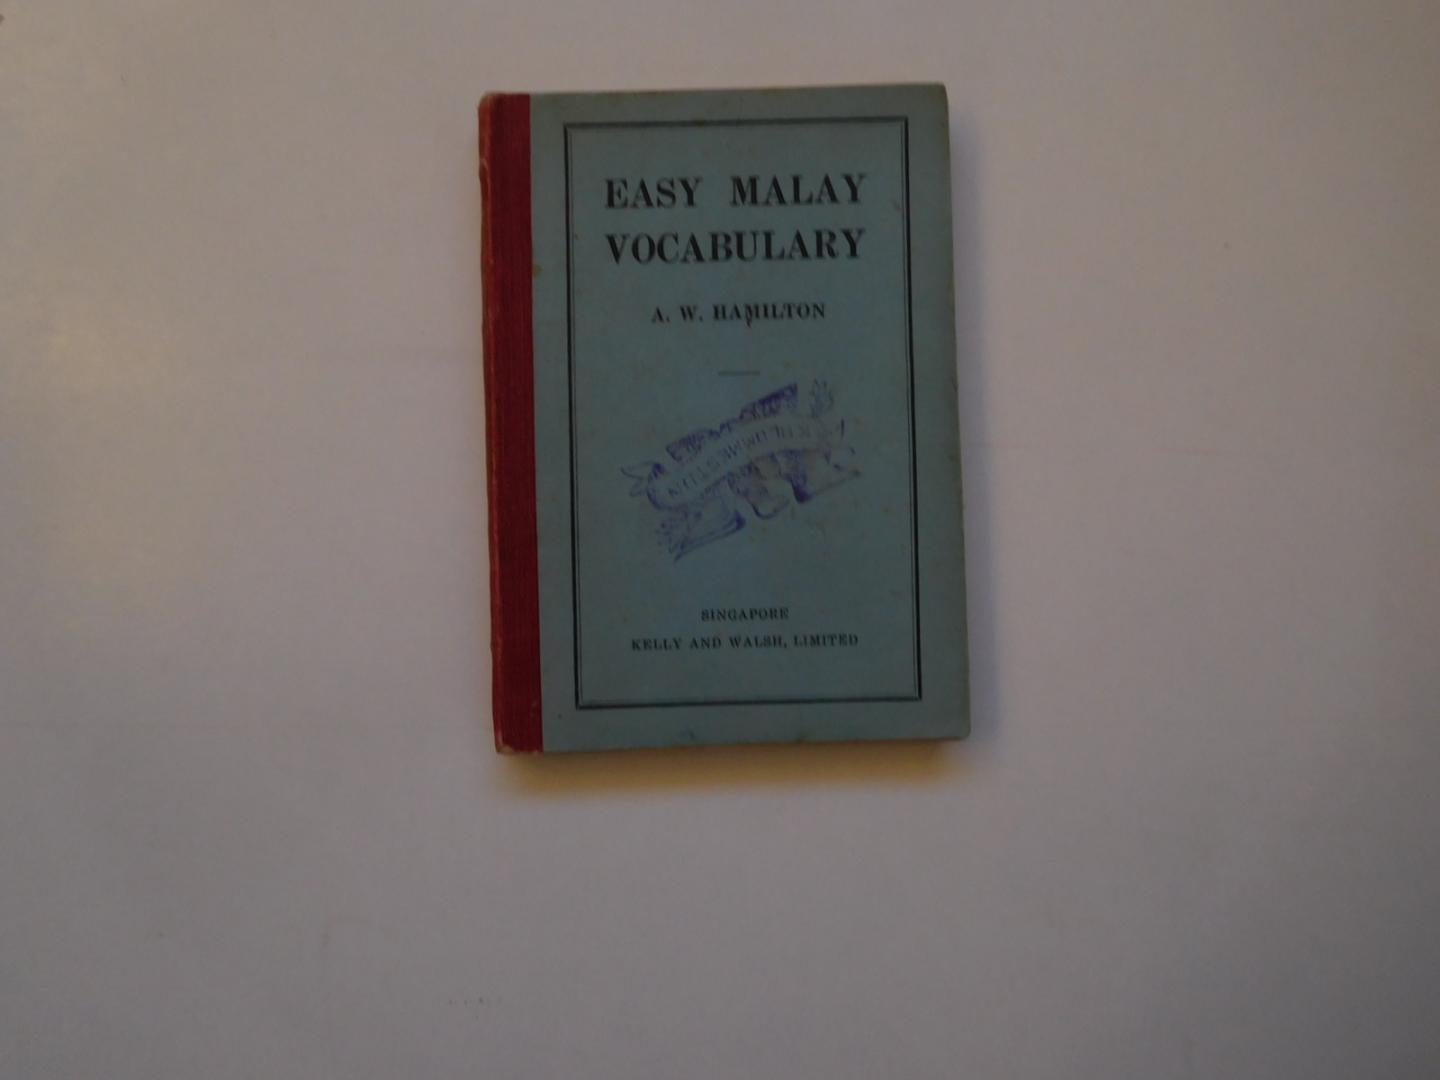 Hamilton, A.W. - Easy Malay Vocabulary